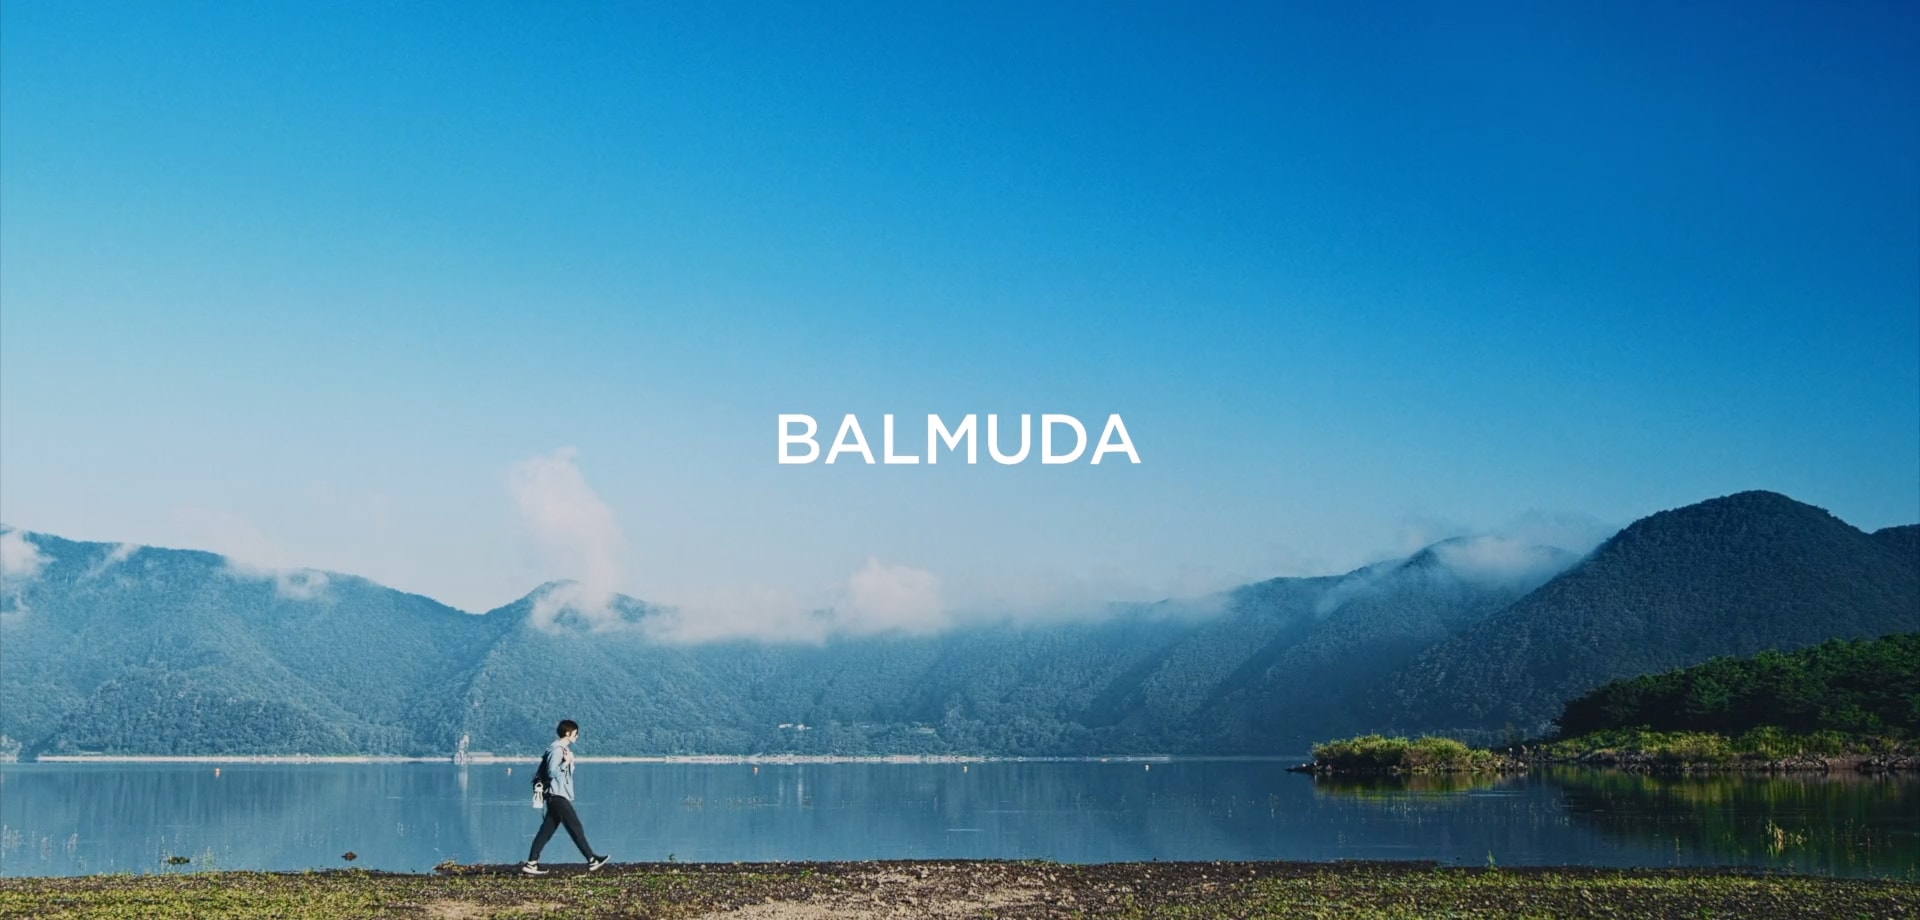 BALMUDA  WATCH MOVIE